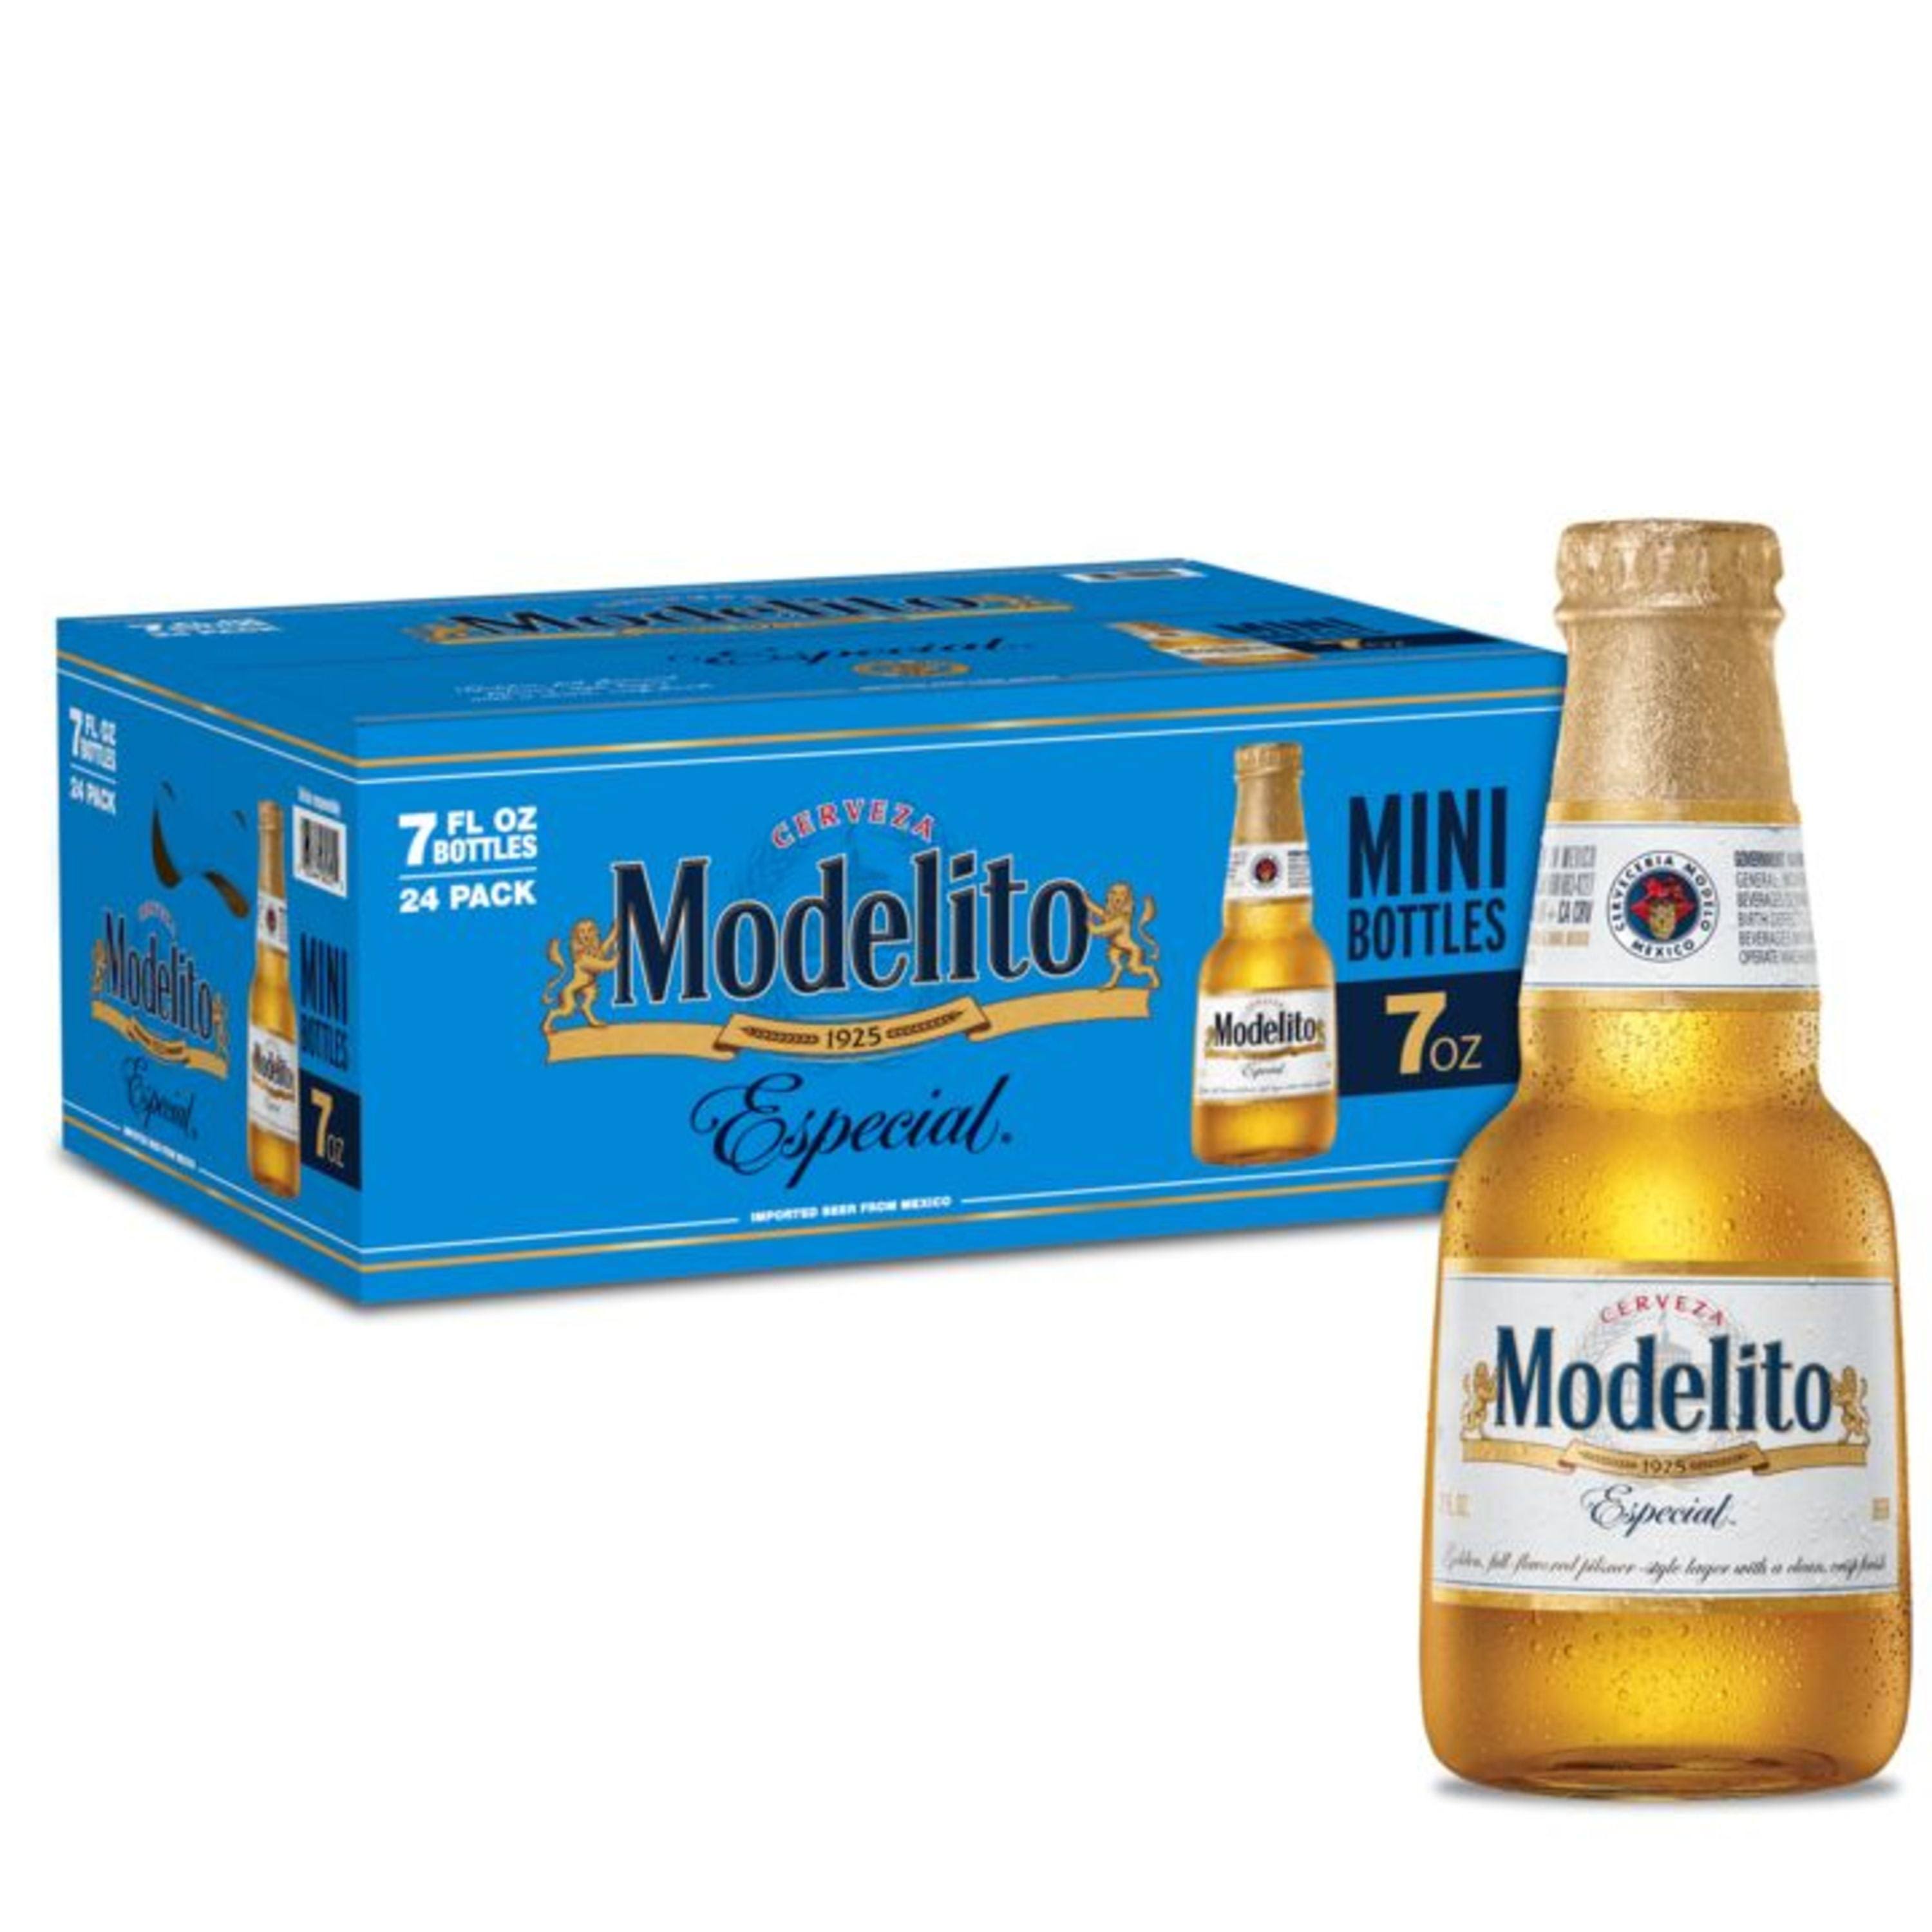 Modelito Beer, Imported, Especial - 24 pack, 7 fl oz bottles